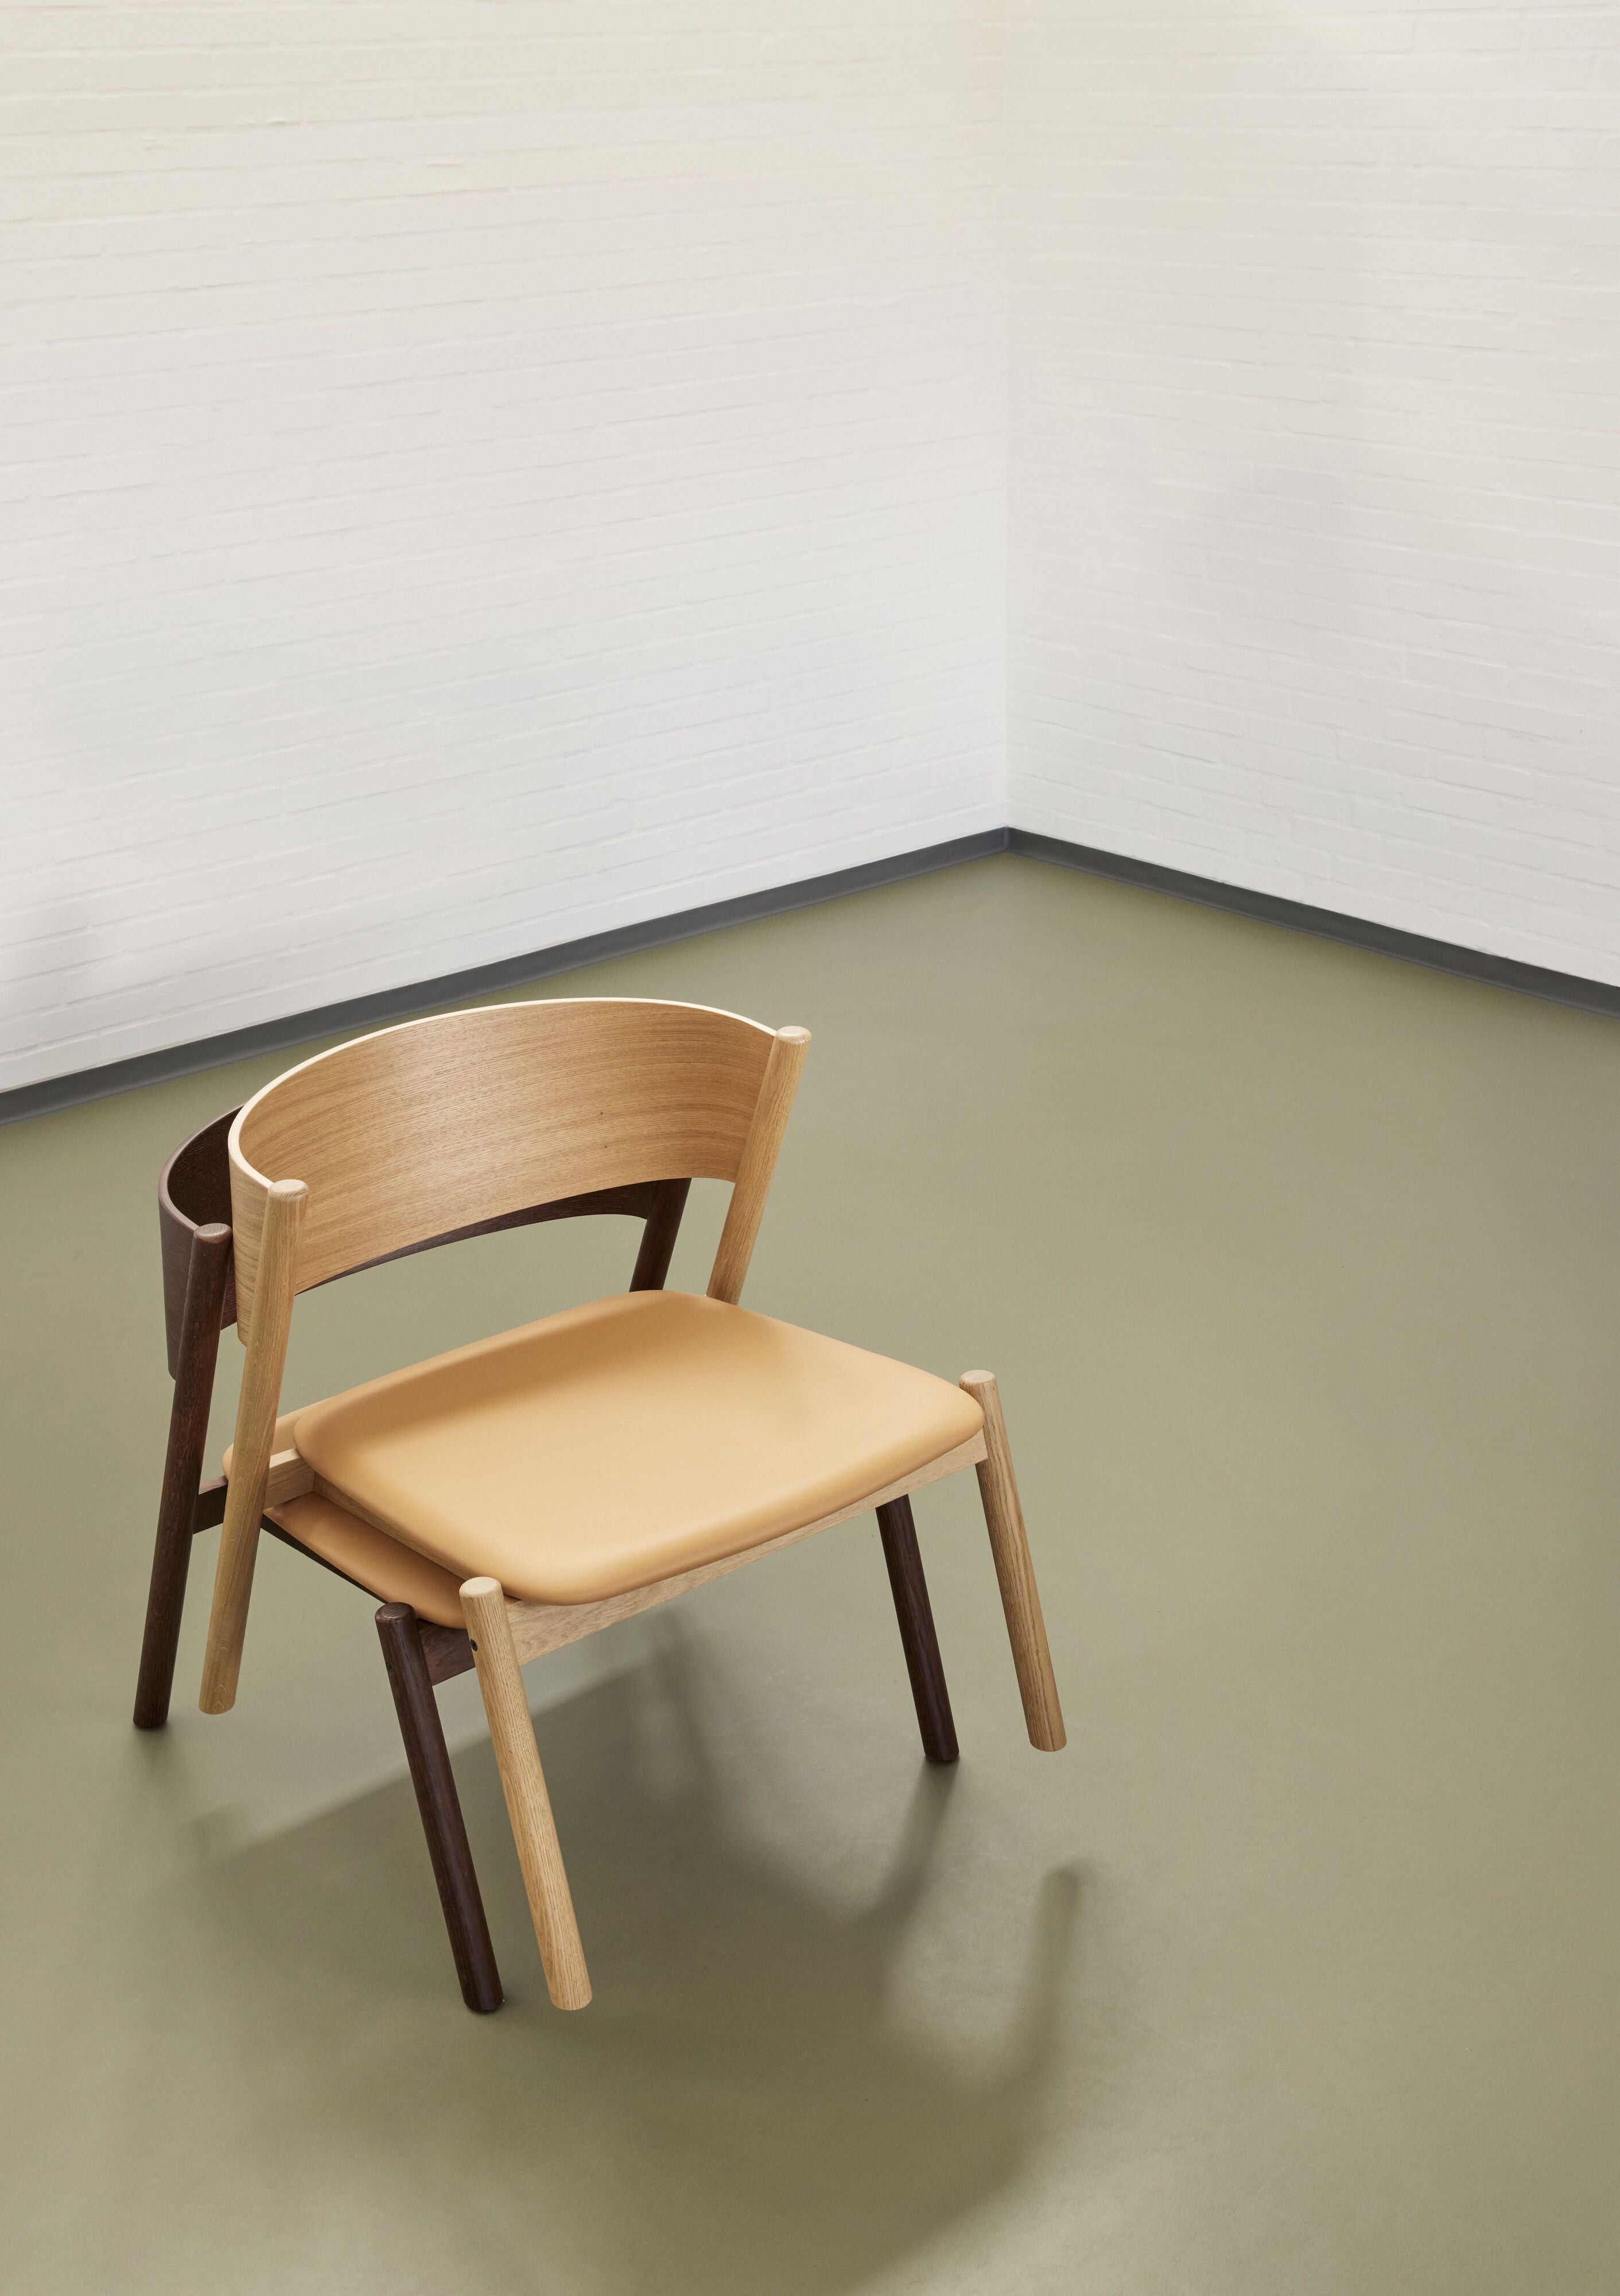 Hübsch Siège de chaise de salon oblique, brun foncé